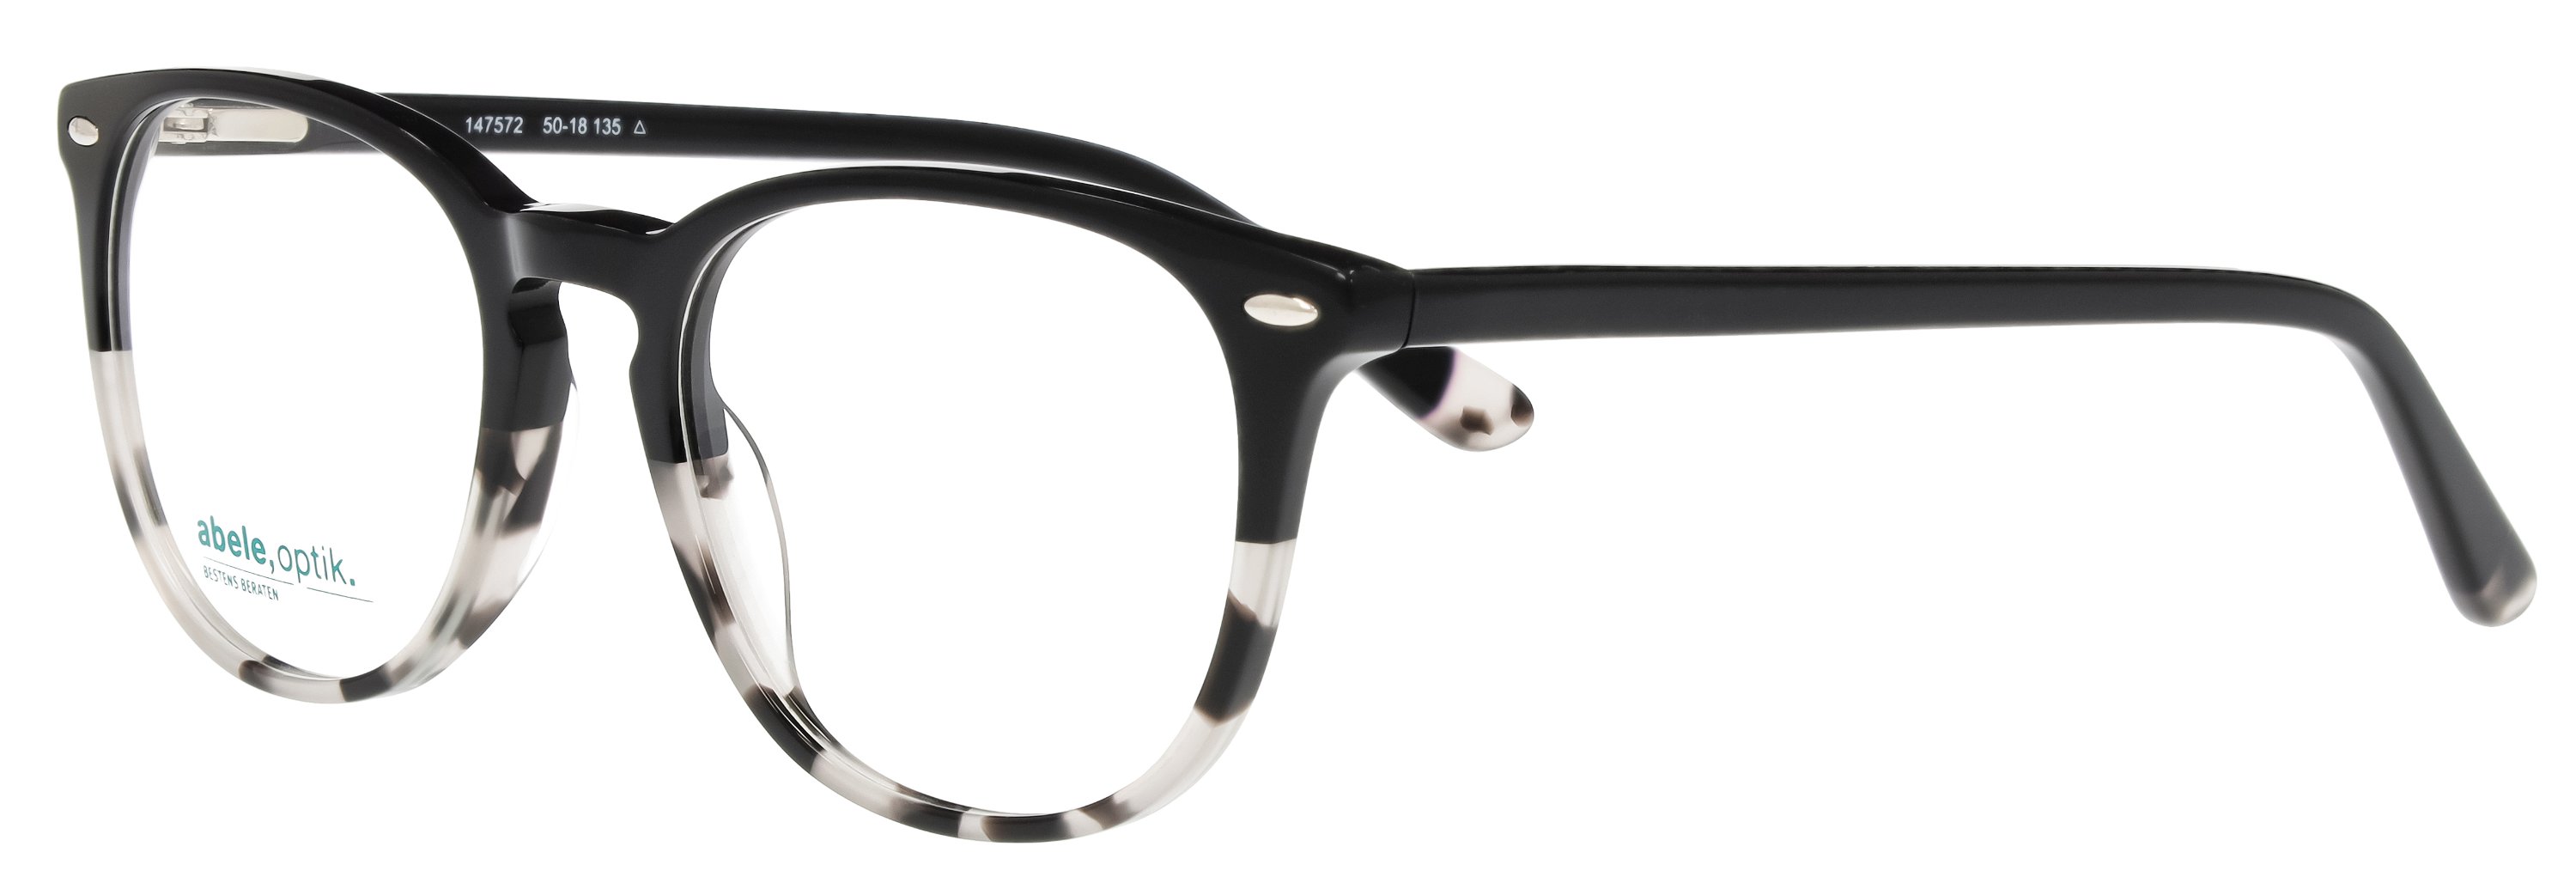 abele optik Brille für Damen schwarz/grau gemustert 147572